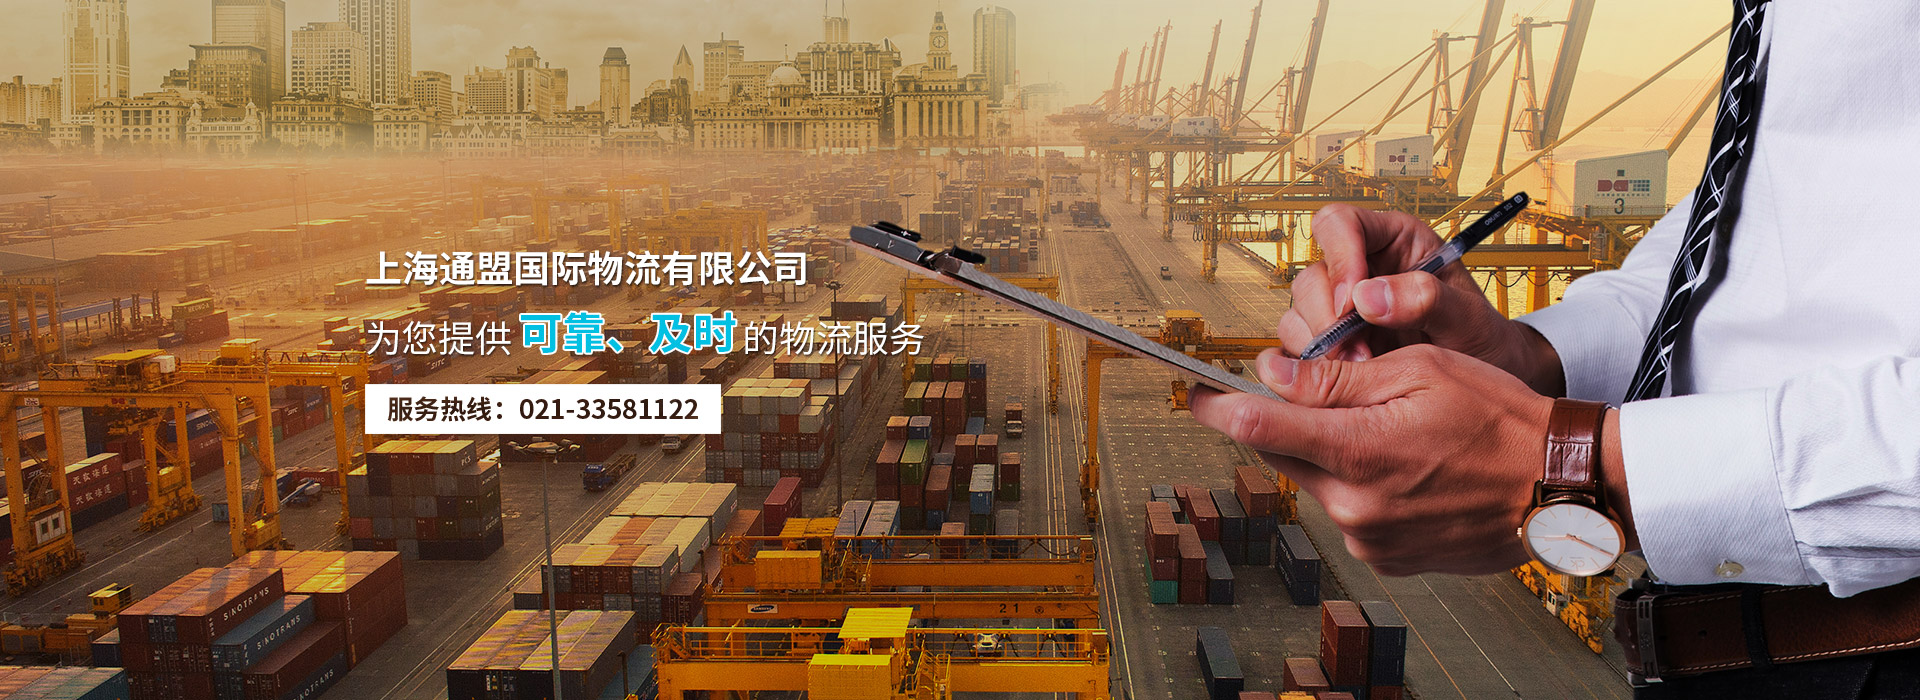 上海通盟国际物流有限公司